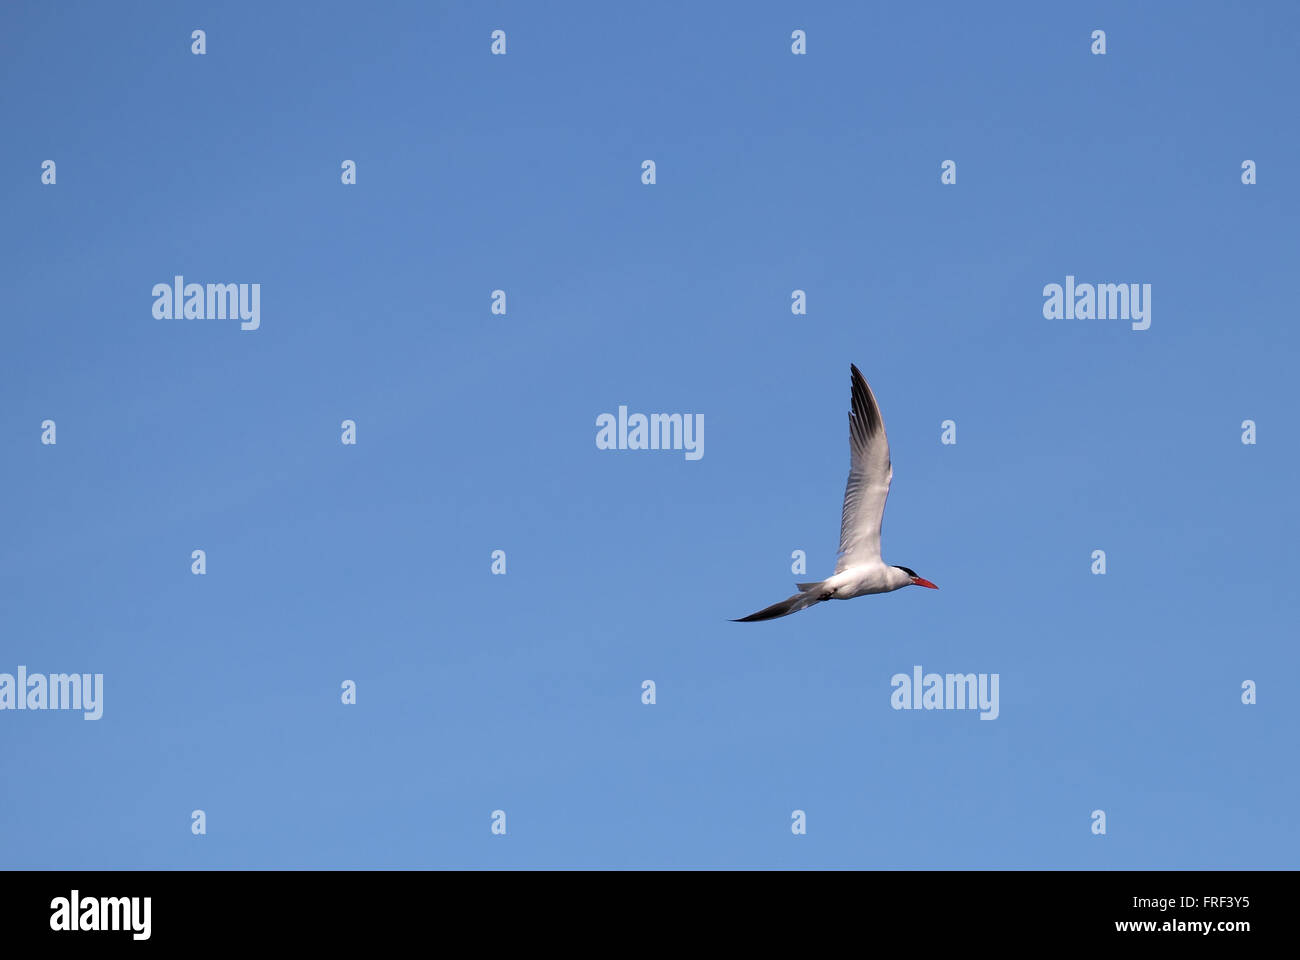 Caspian tern (Hydroprogne caspia) flying in front of a blue sky. Stock Photo